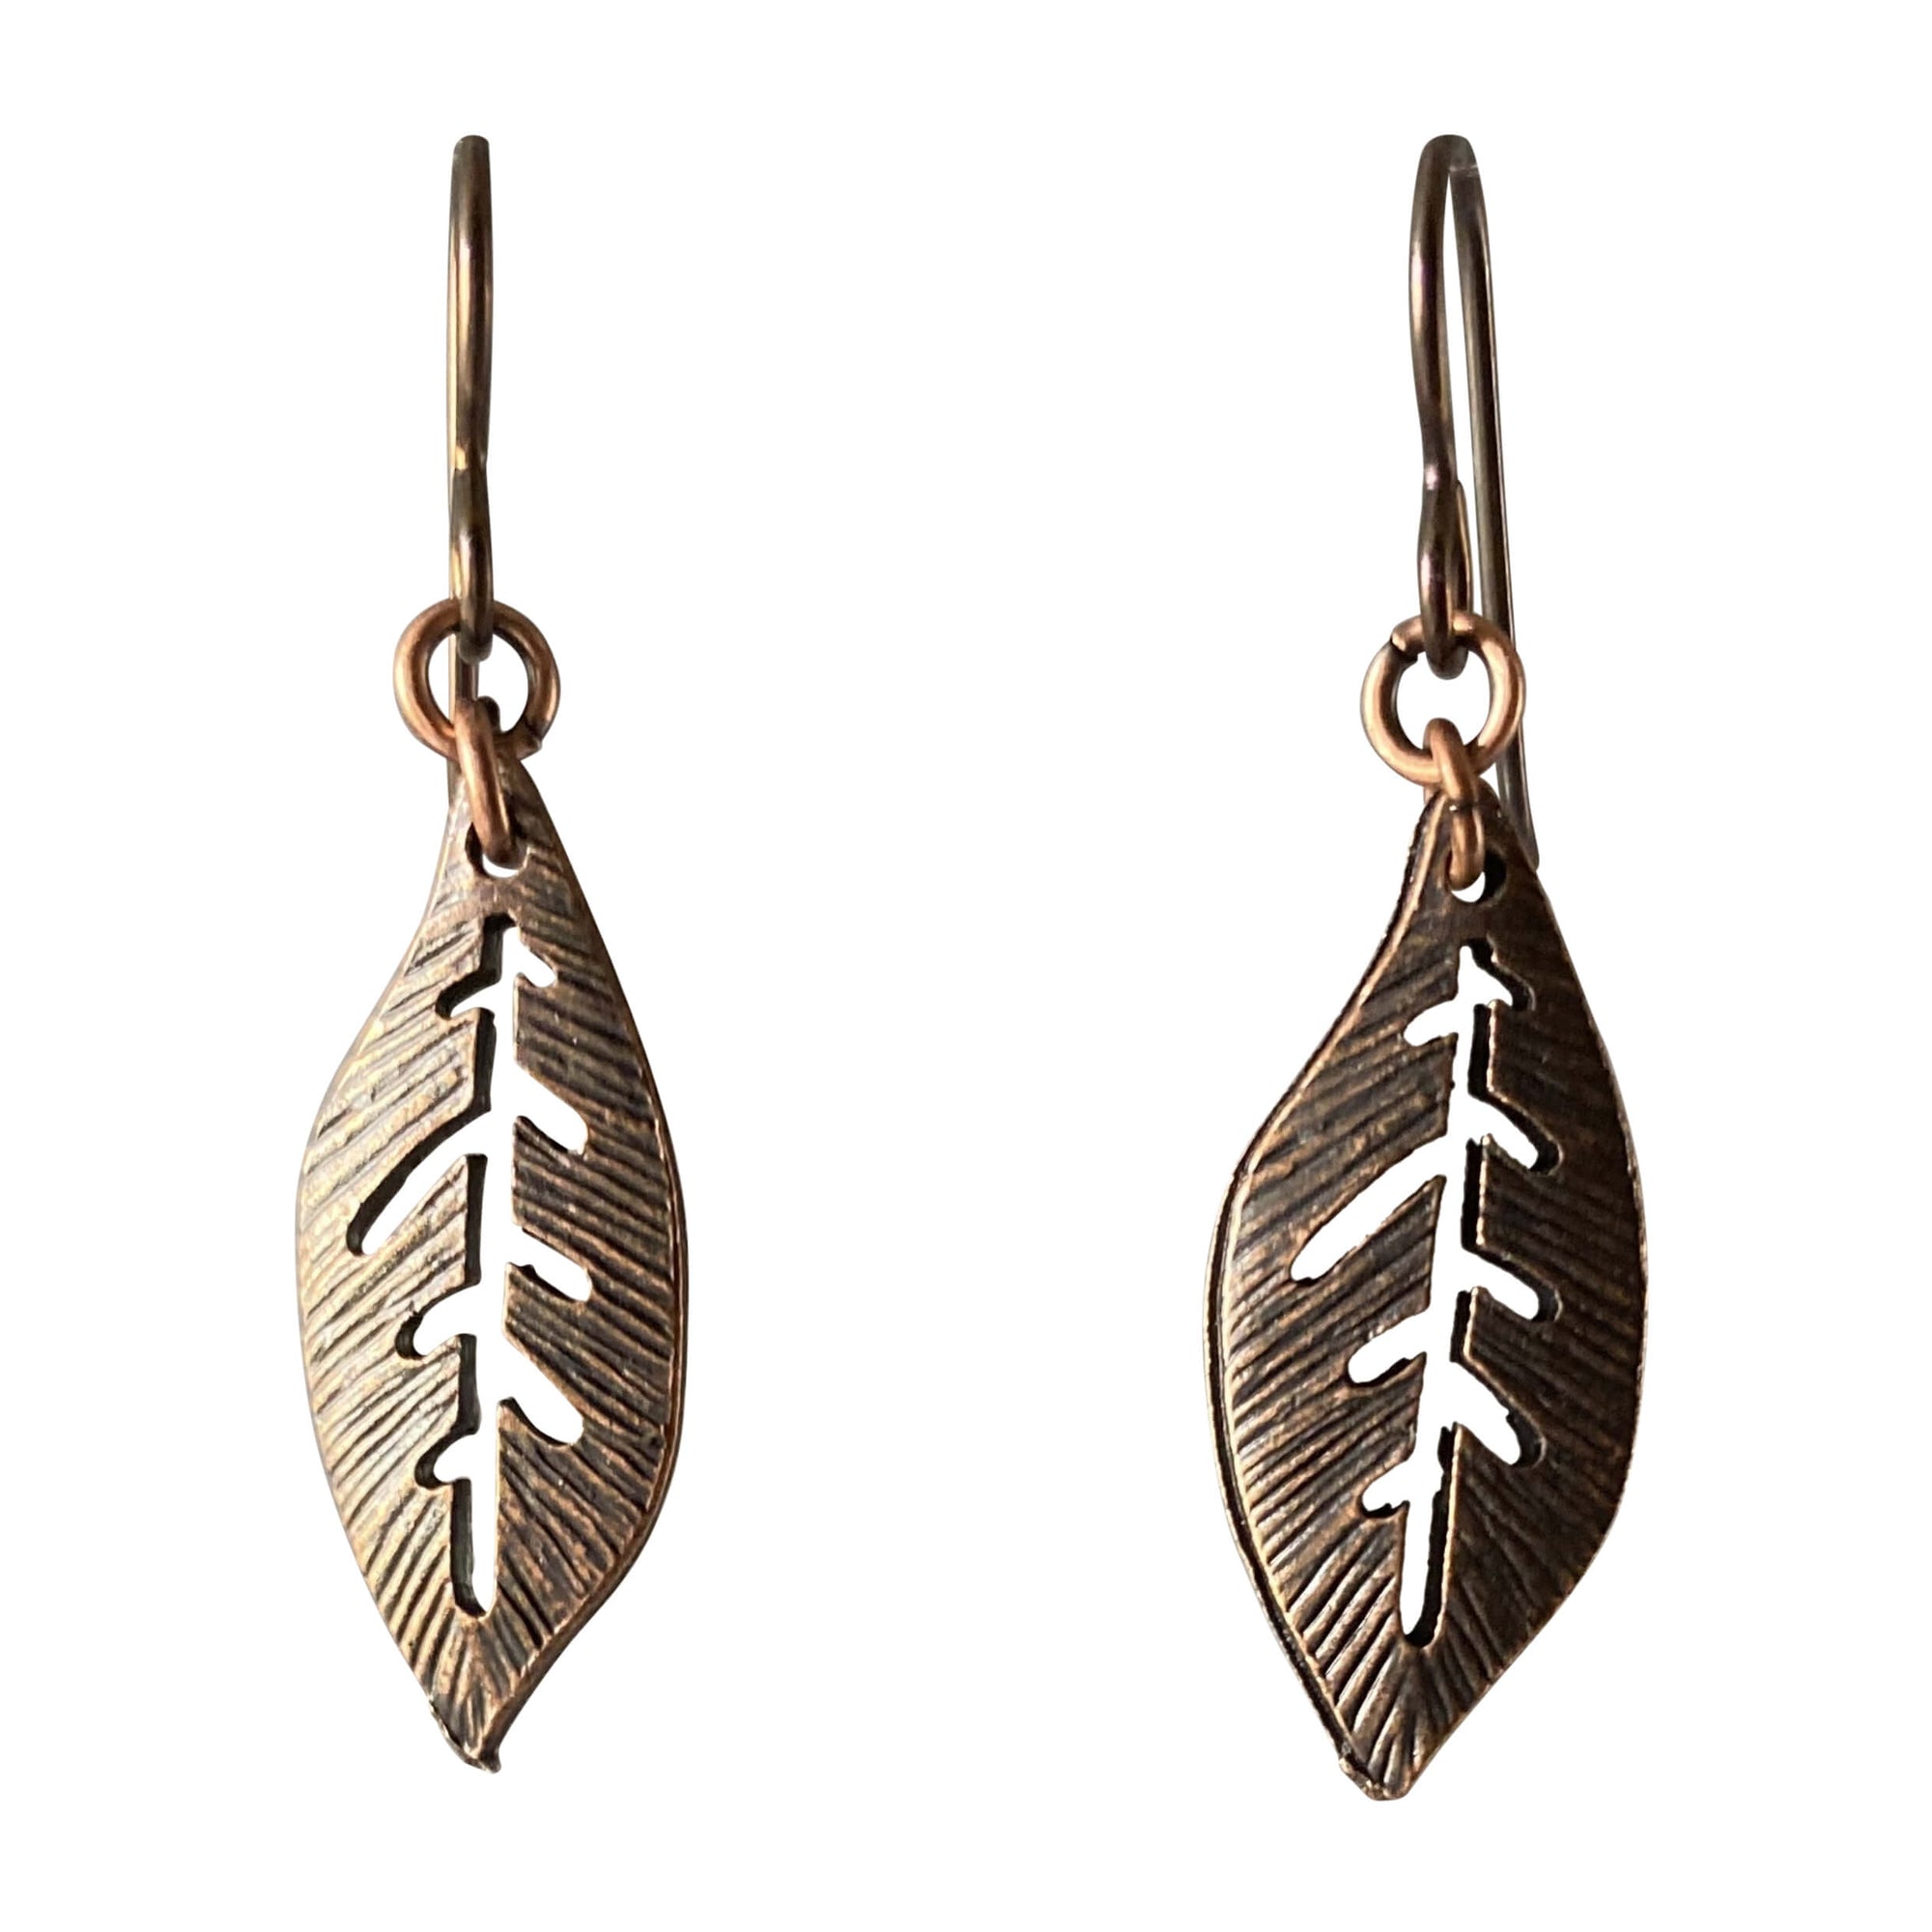 Antique Copper Oval Leaf Earrings for Sensitive Ears-Earrings- Creative Jewelry by Marcia